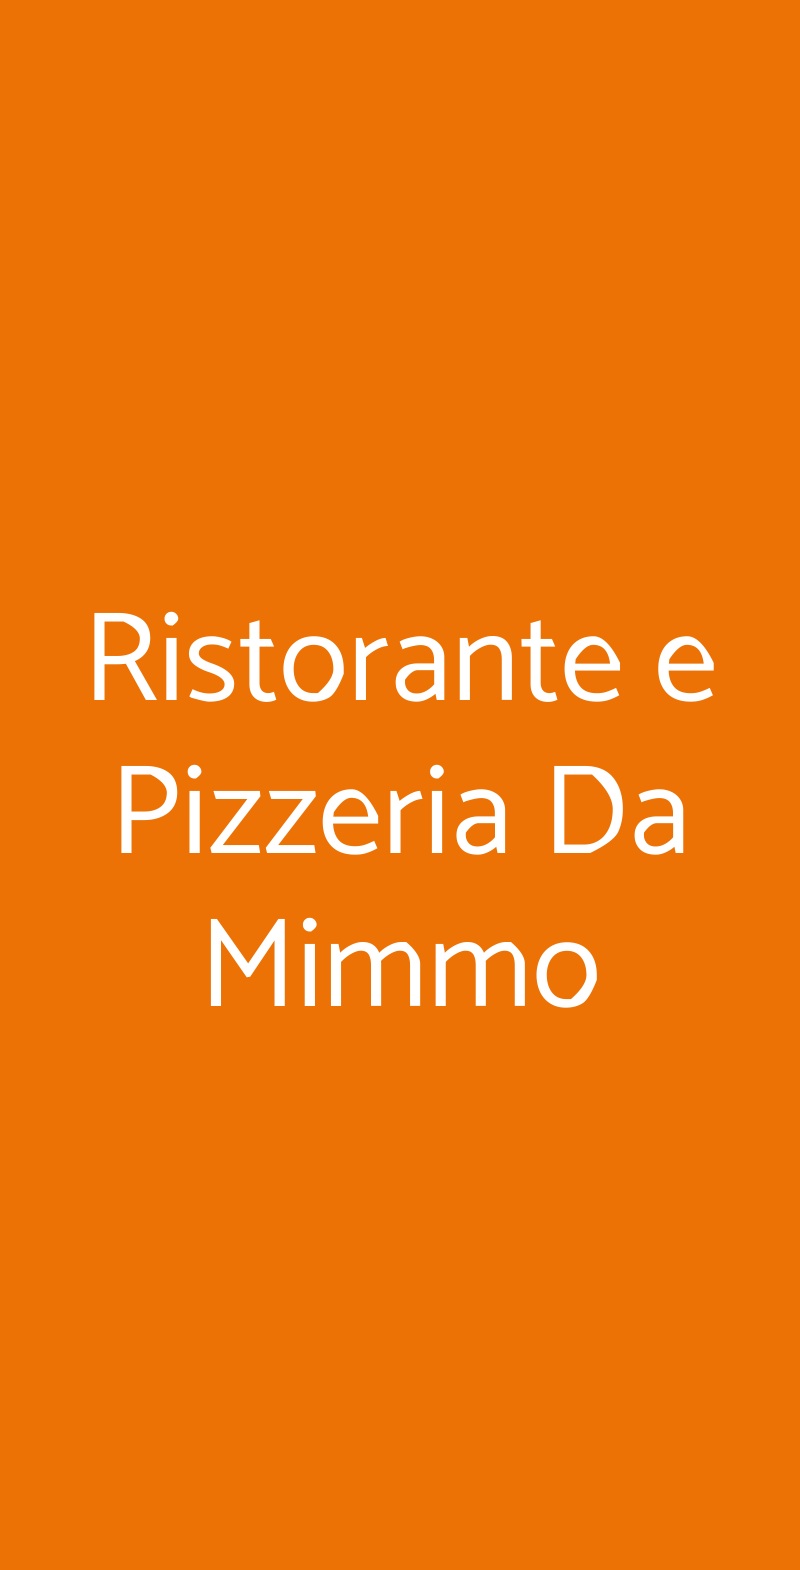 Ristorante e Pizzeria Da Mimmo Milano menù 1 pagina